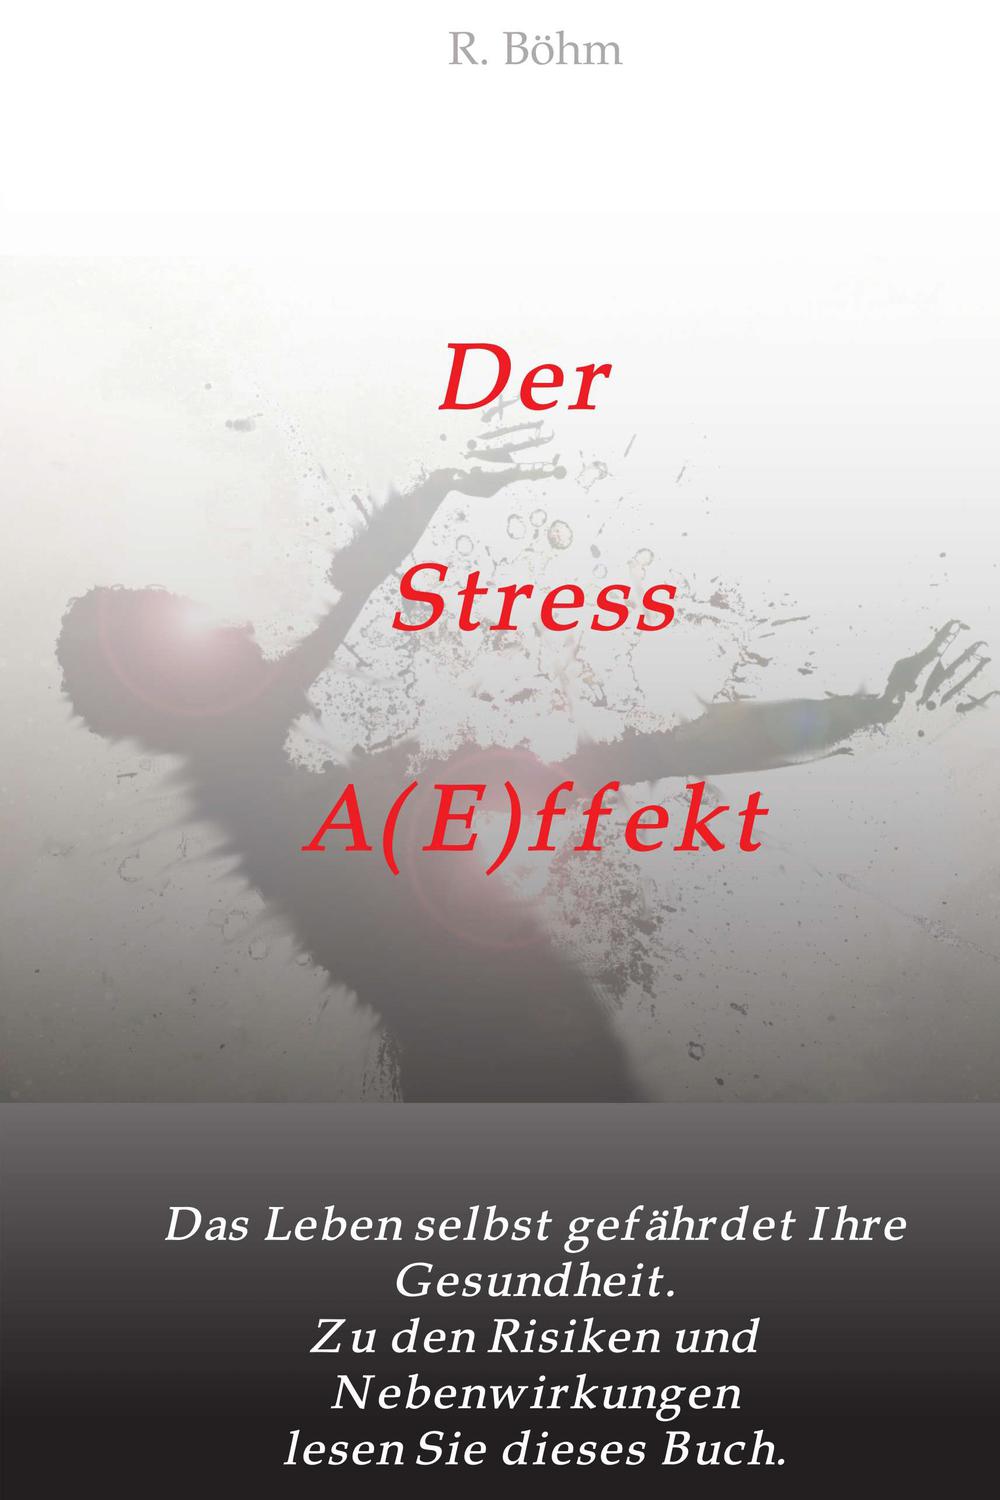 Der Stress AEffekt - R. Böhm